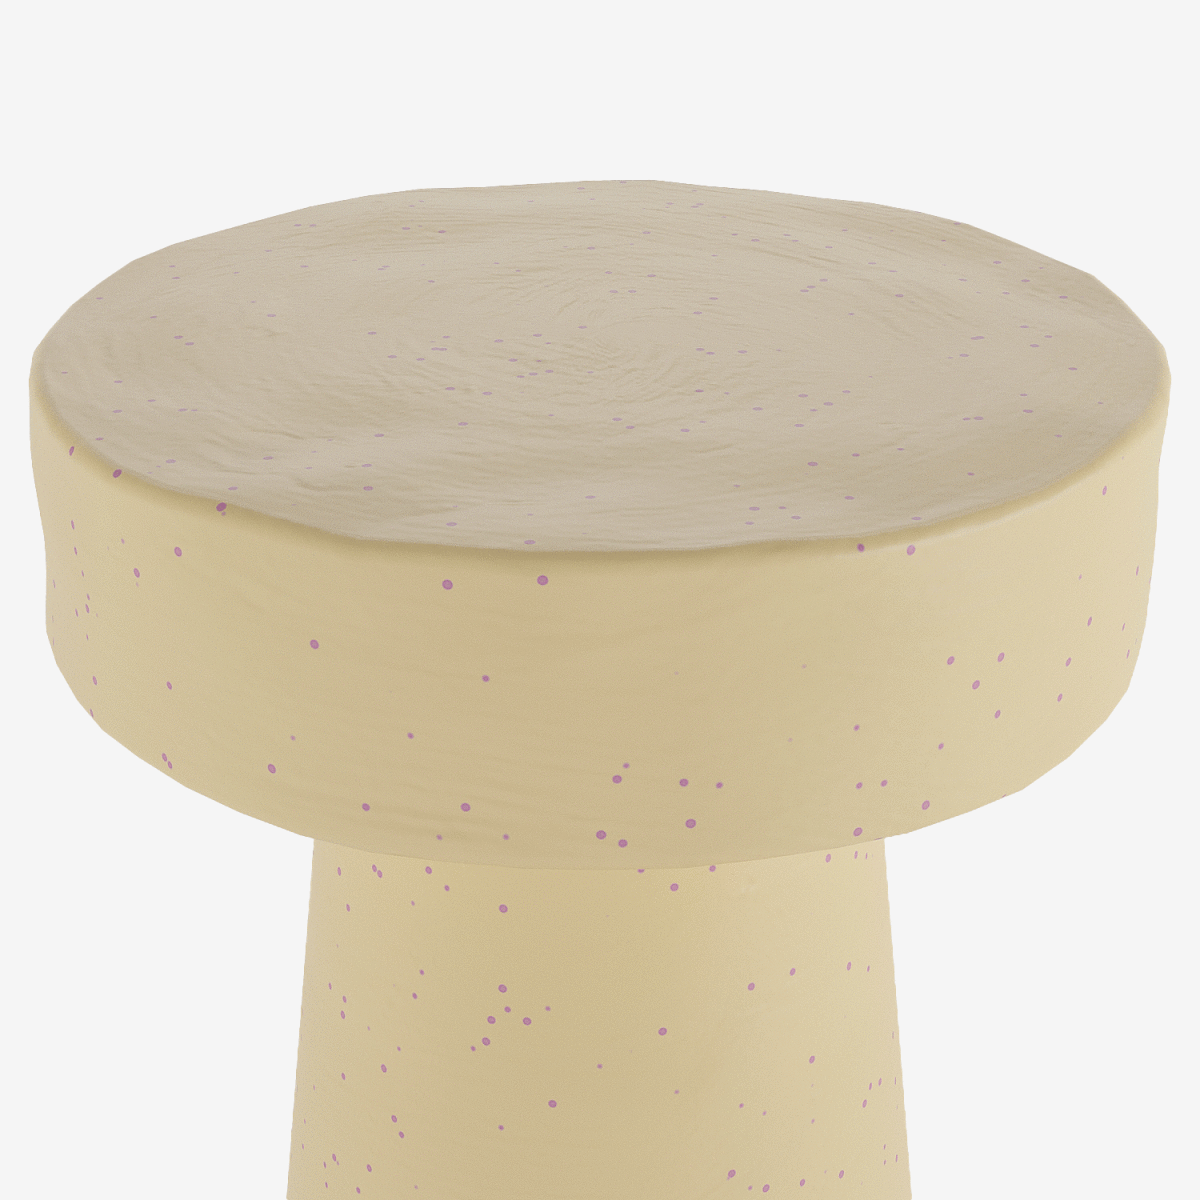 Petit meuble de salon design : table d’appoint ronde design aspect ciment brut moucheté rose